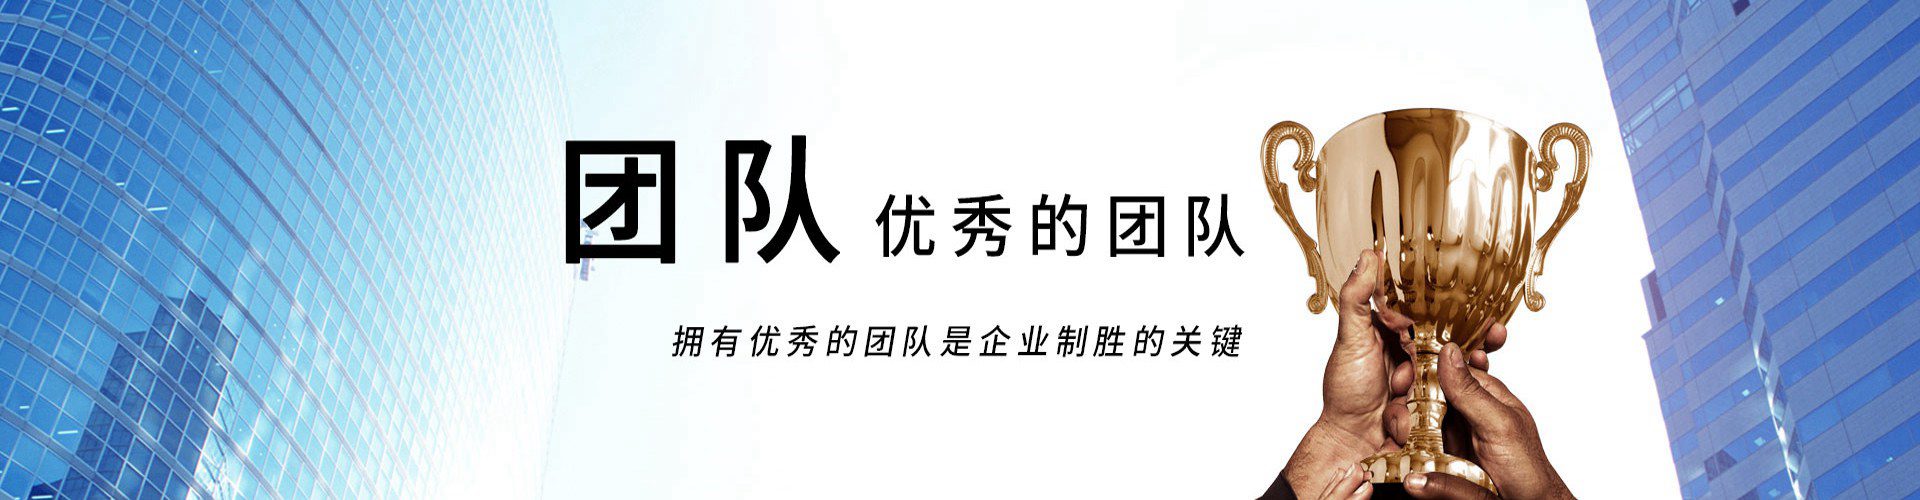 珠江電纜banner